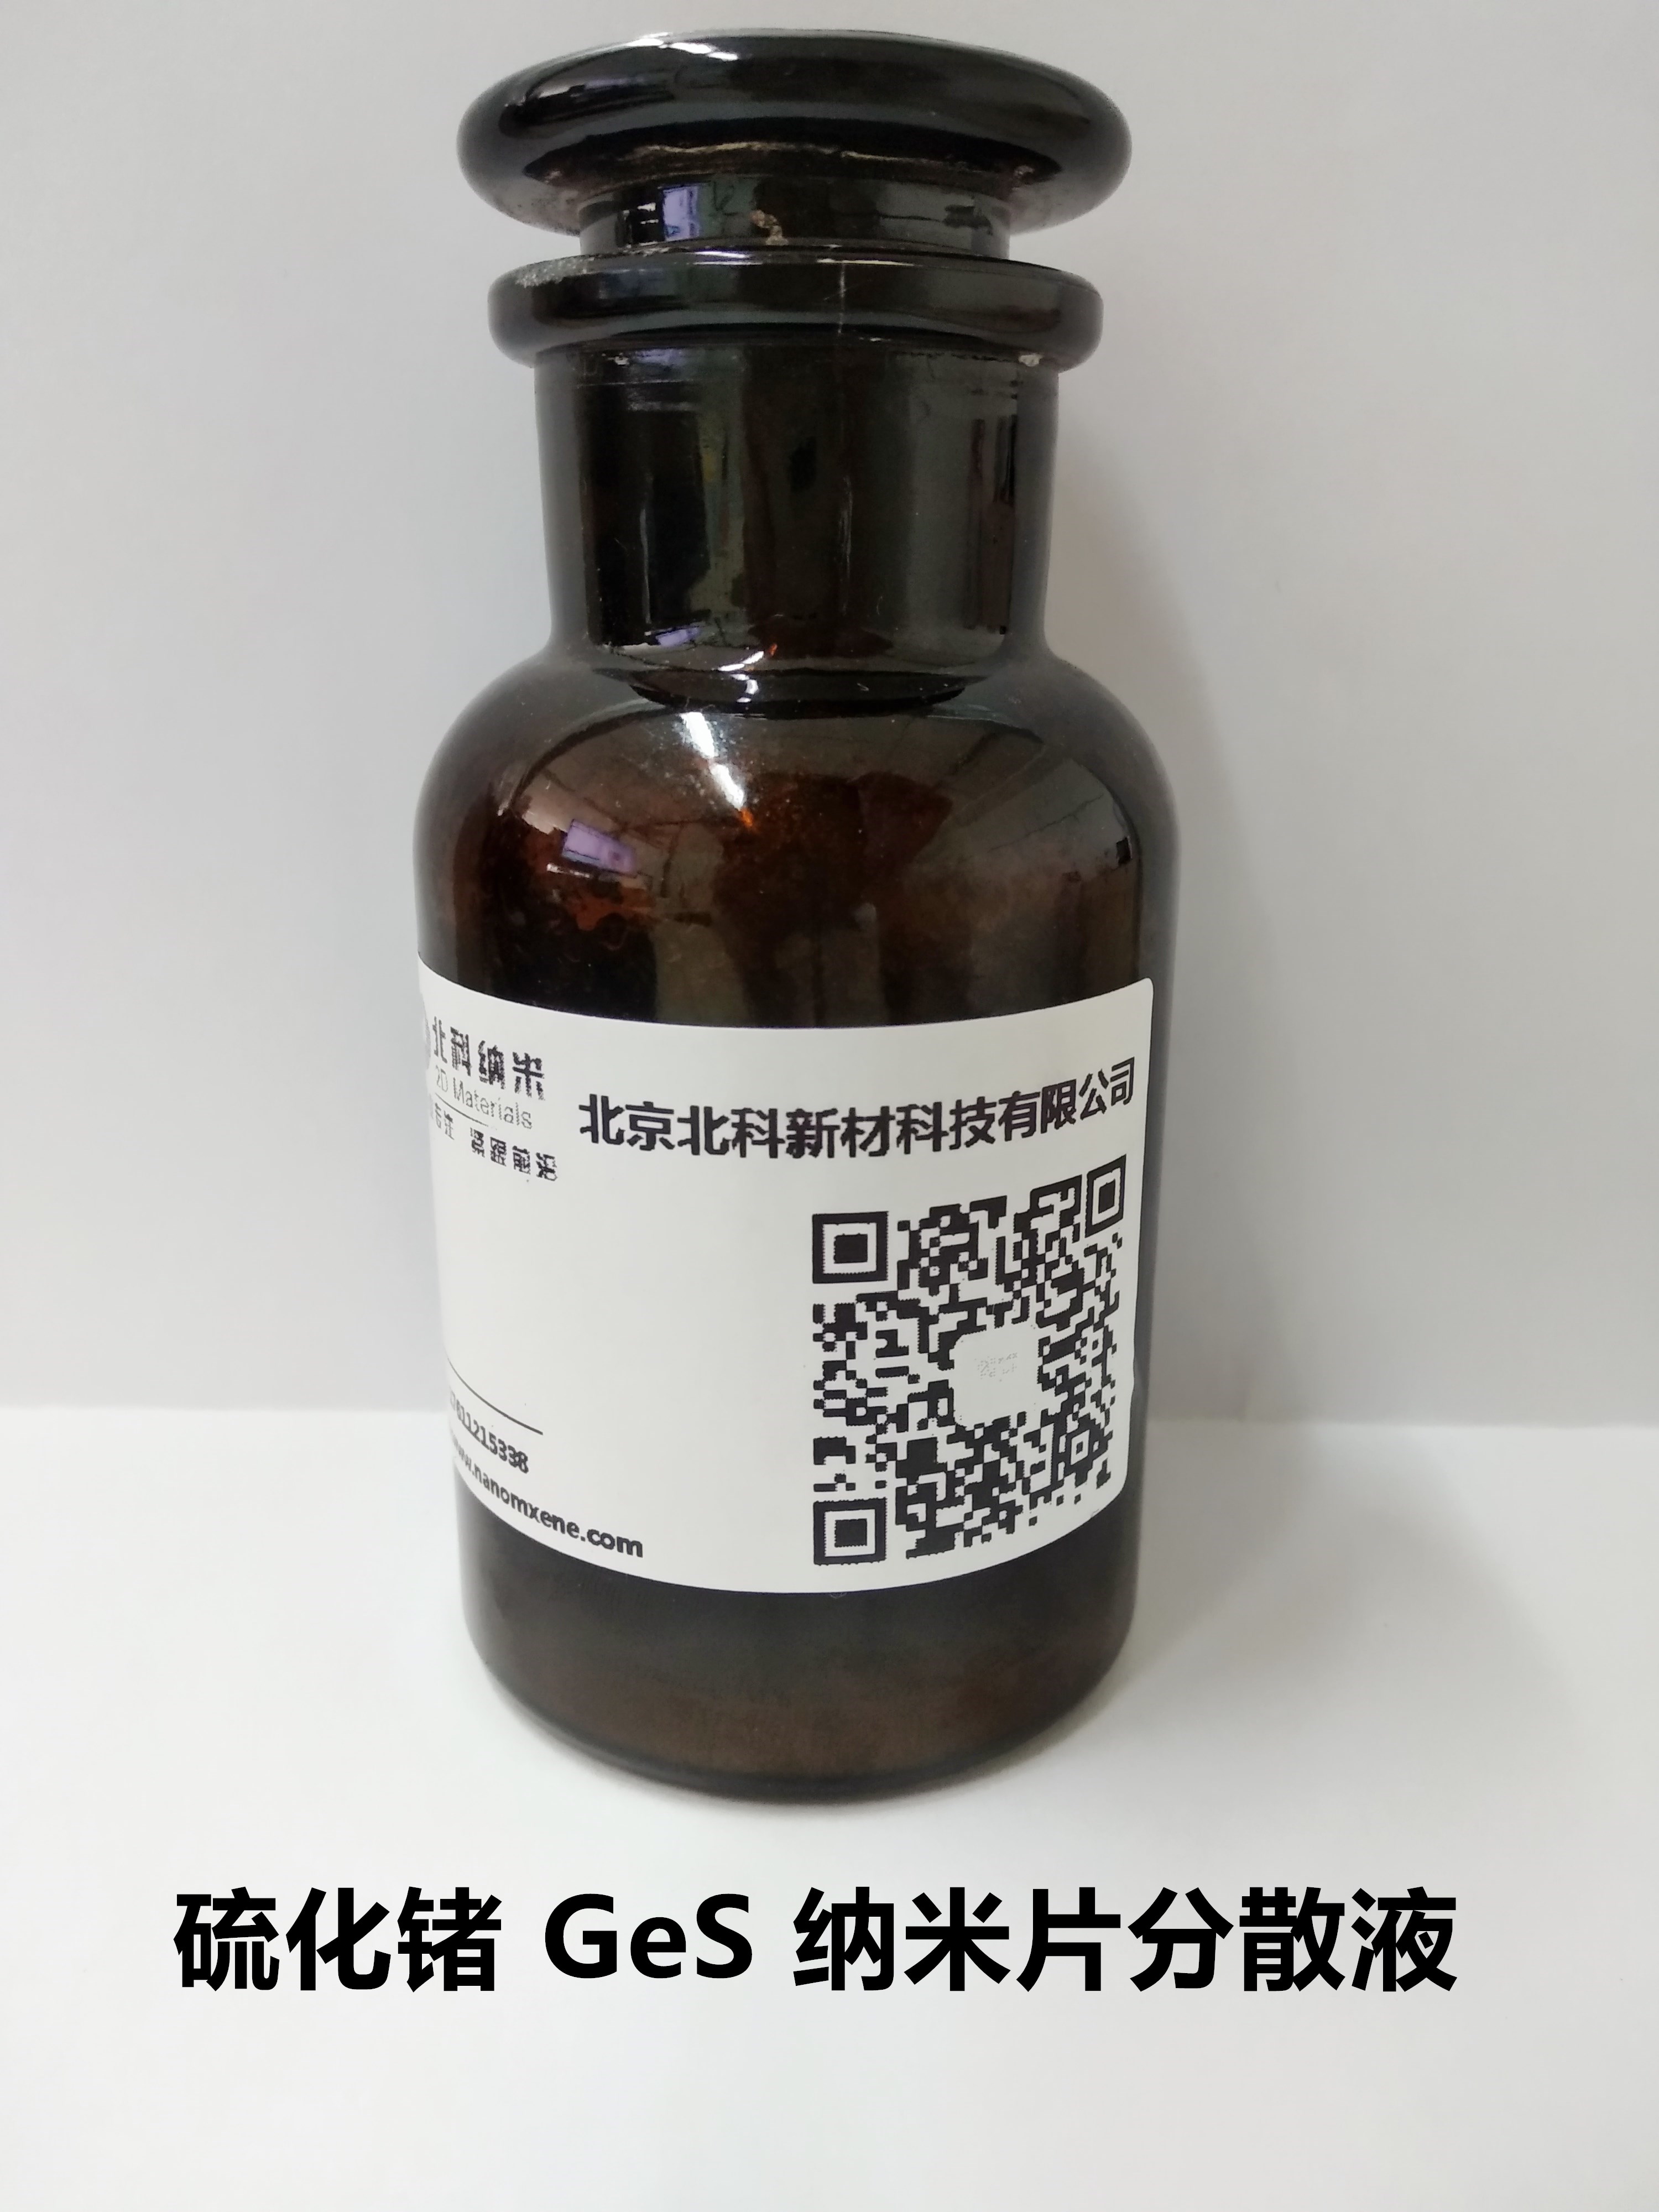 硫化锗 GeS 纳米片分散液